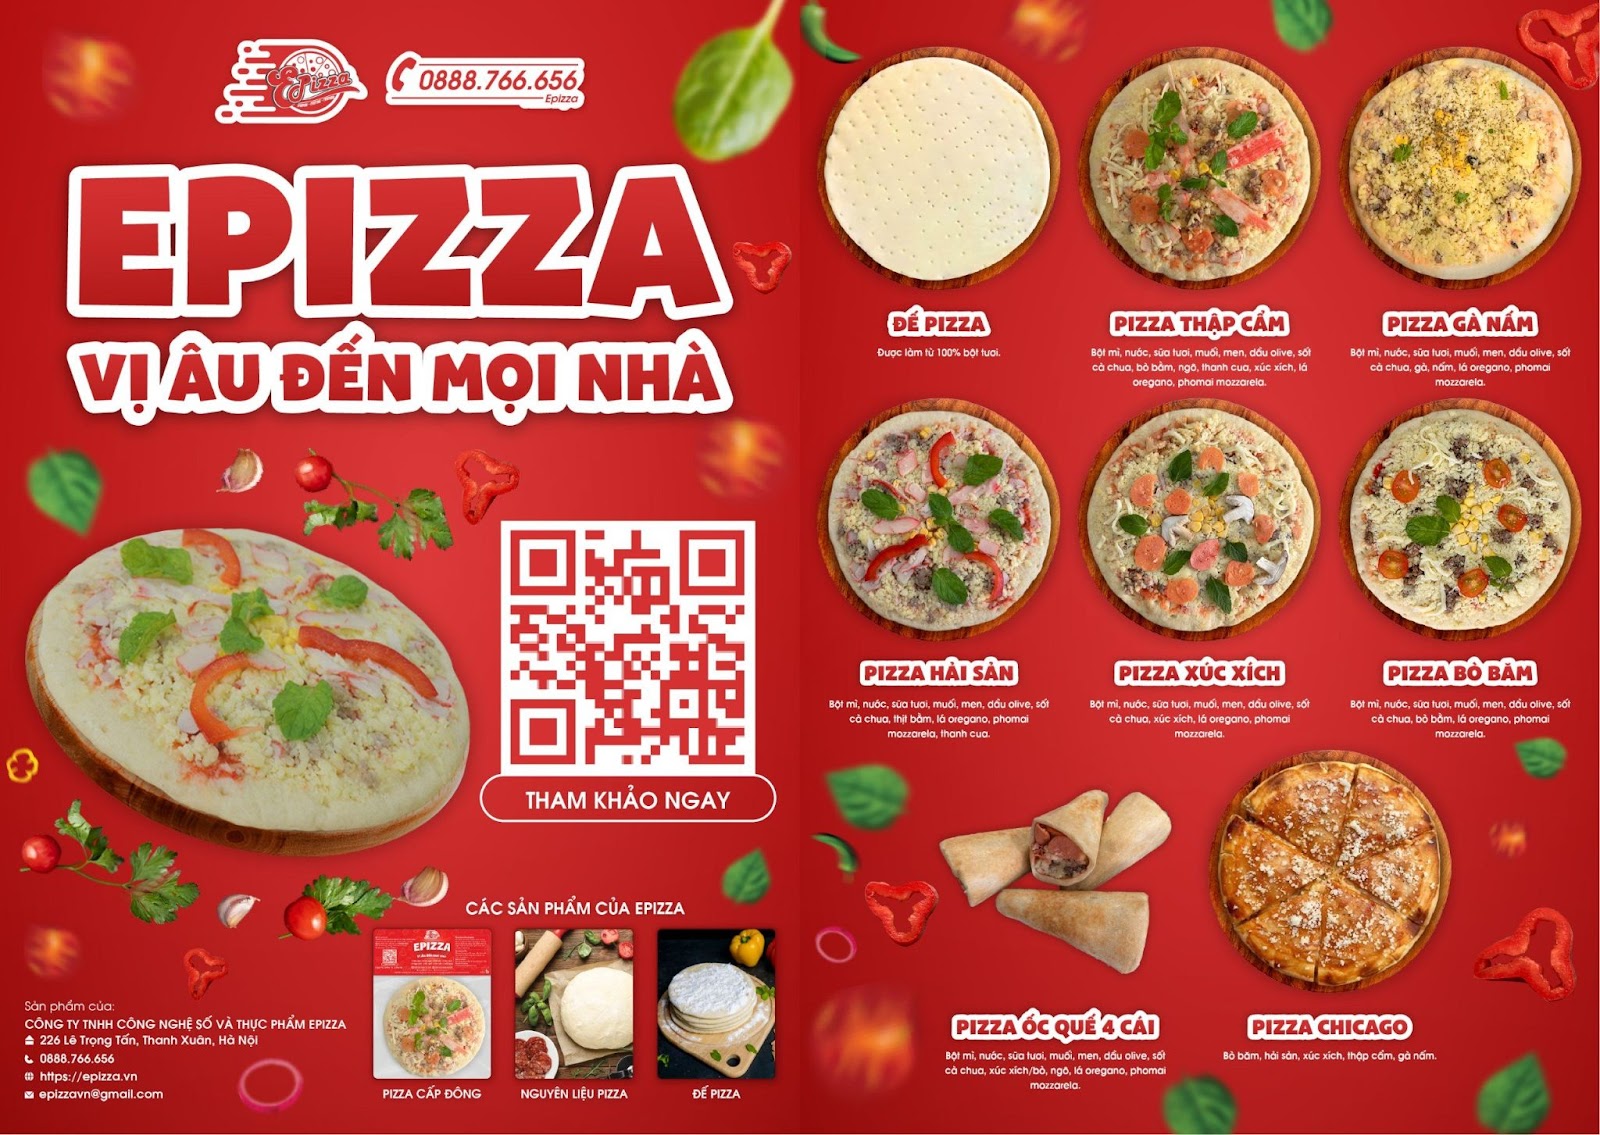 Epizza có những loại pizza cấp đông nào? Giá thành ra sao?